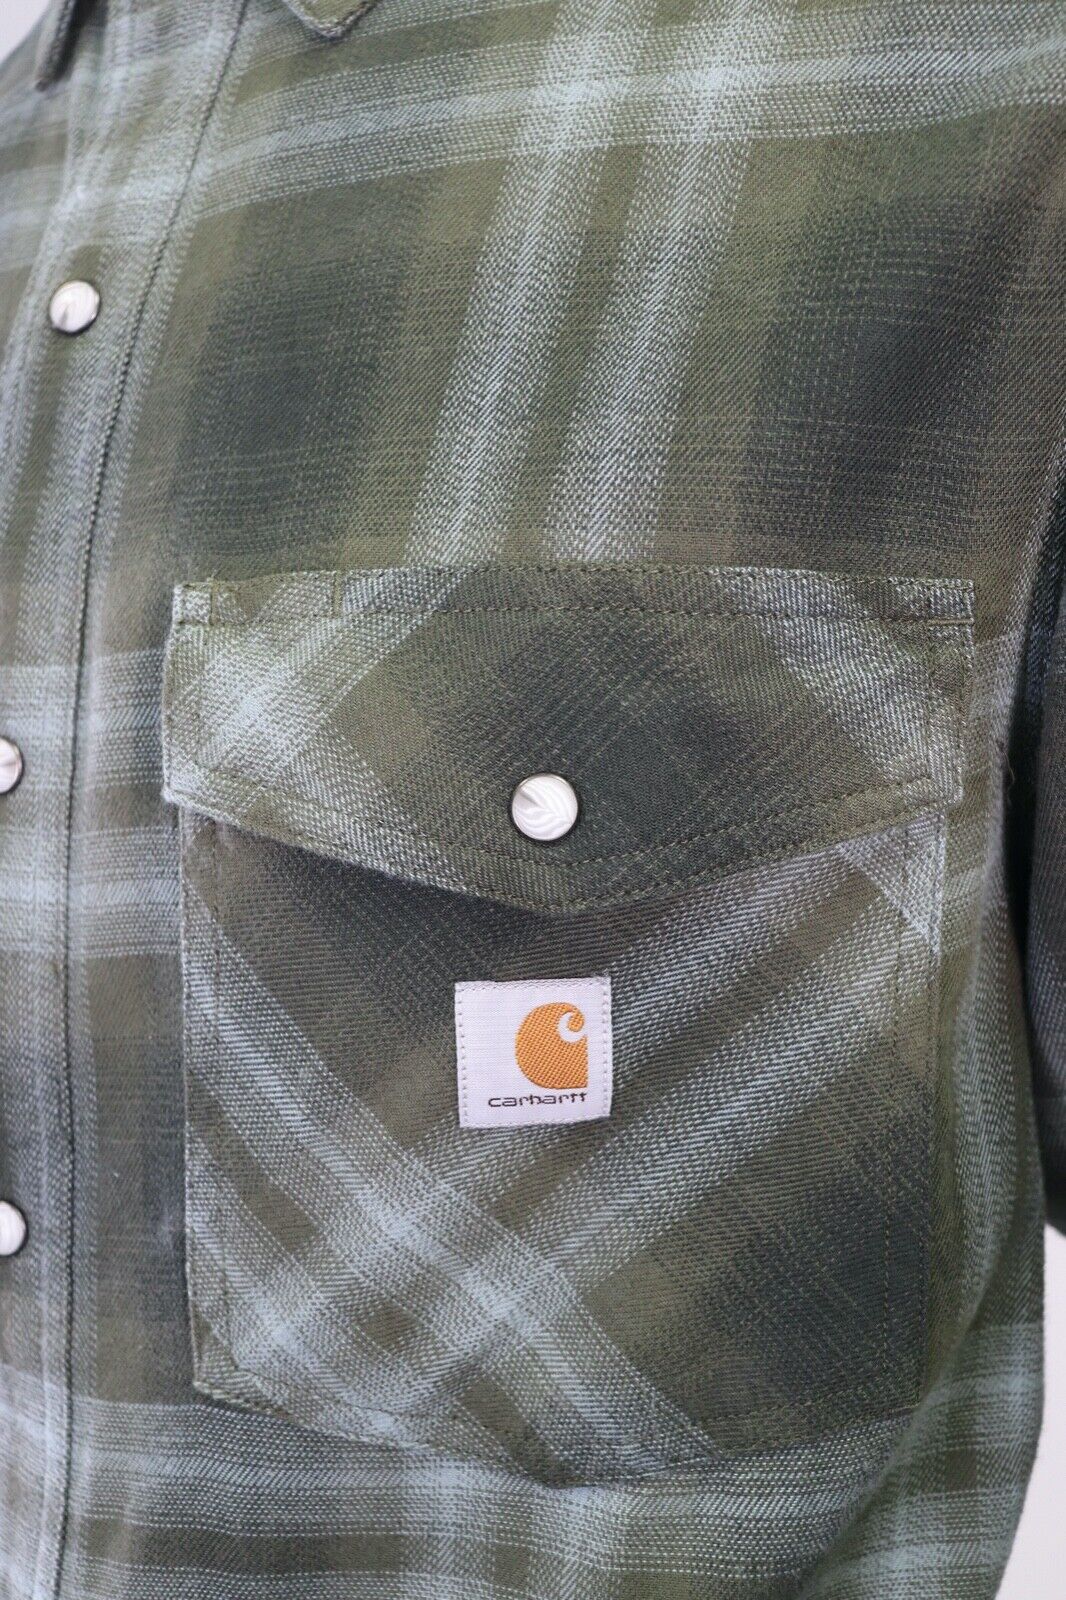 Carhartt Men's Woven Shirt Green Plaid Long Sleeve (331)